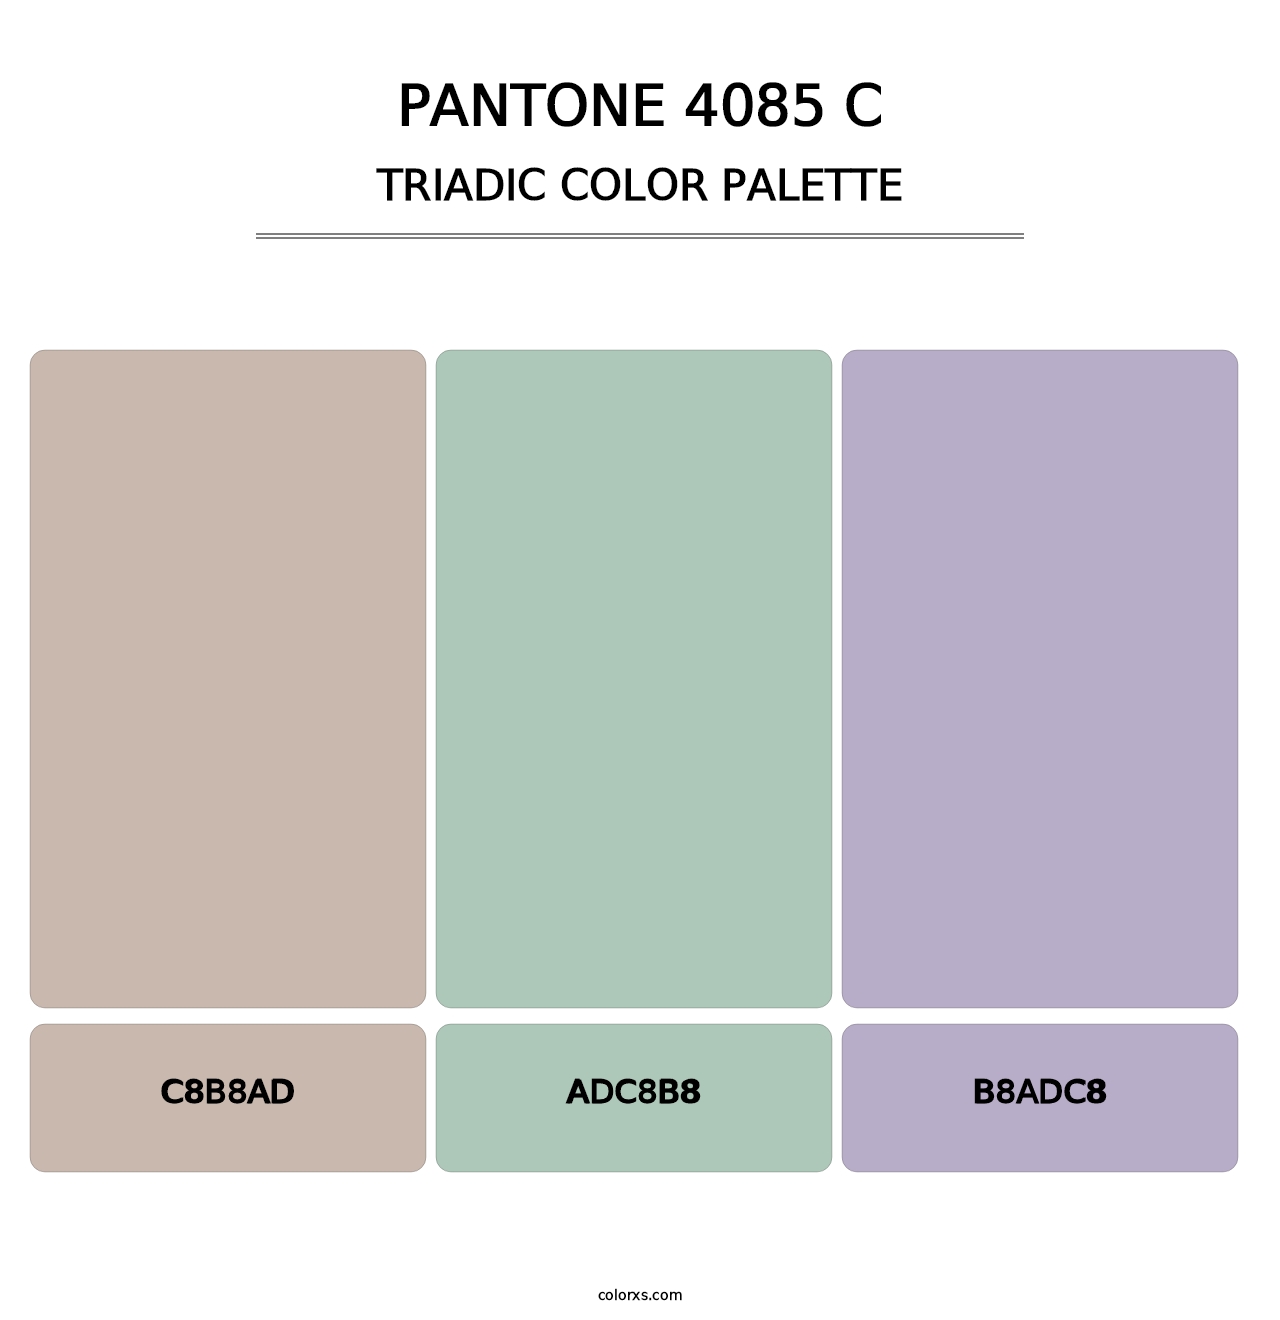 PANTONE 4085 C - Triadic Color Palette